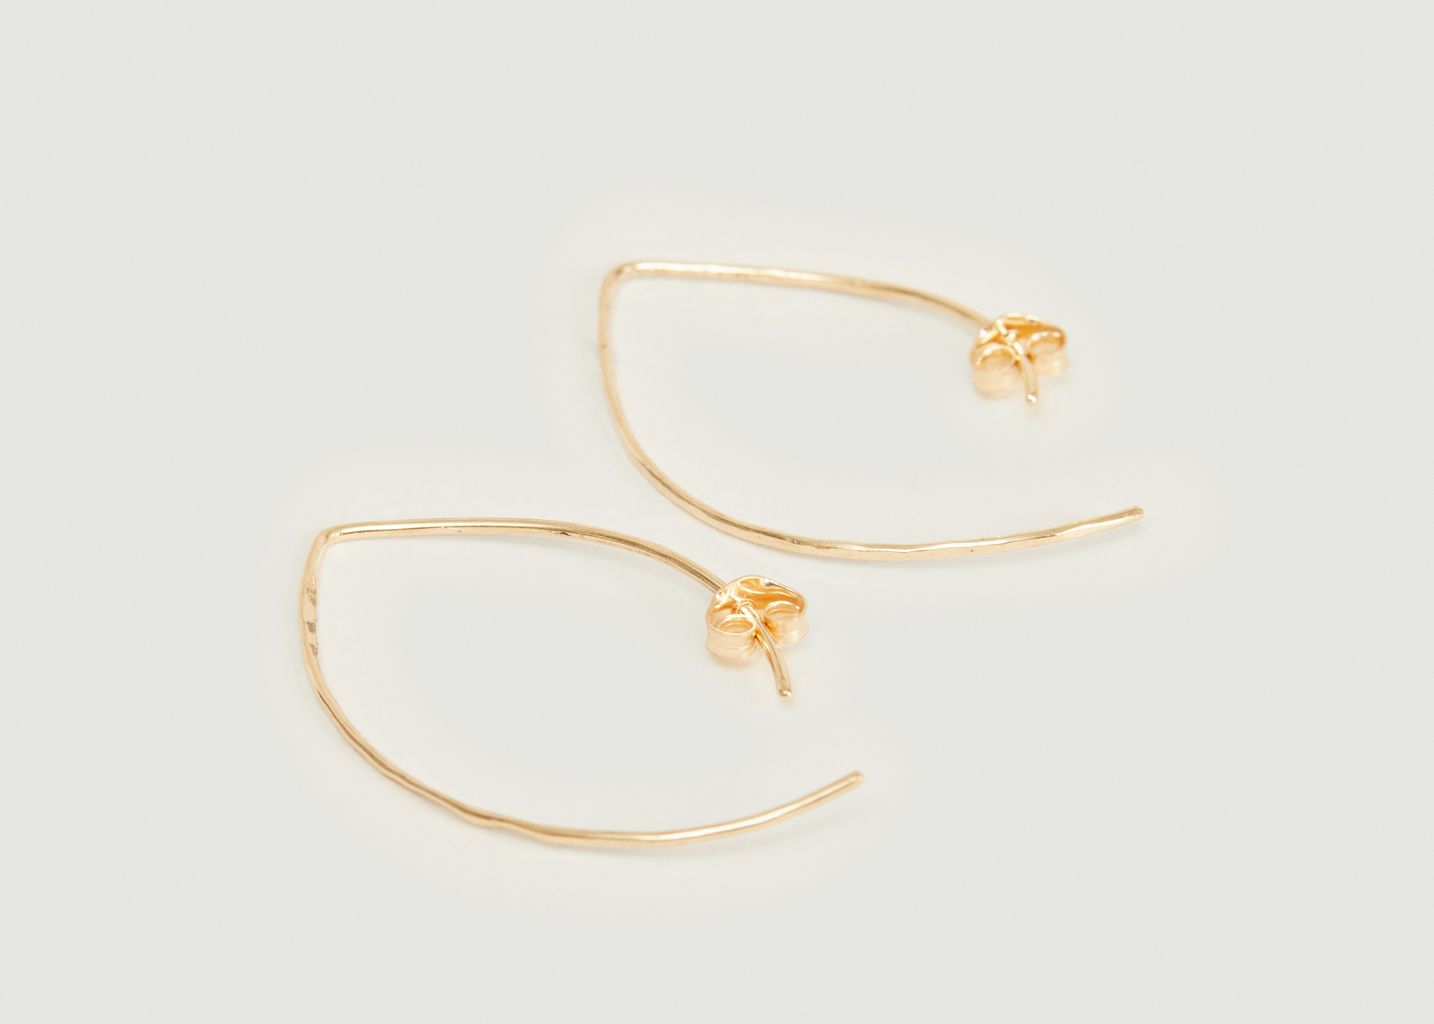 18k gold dangling hook earrings - Monsieur